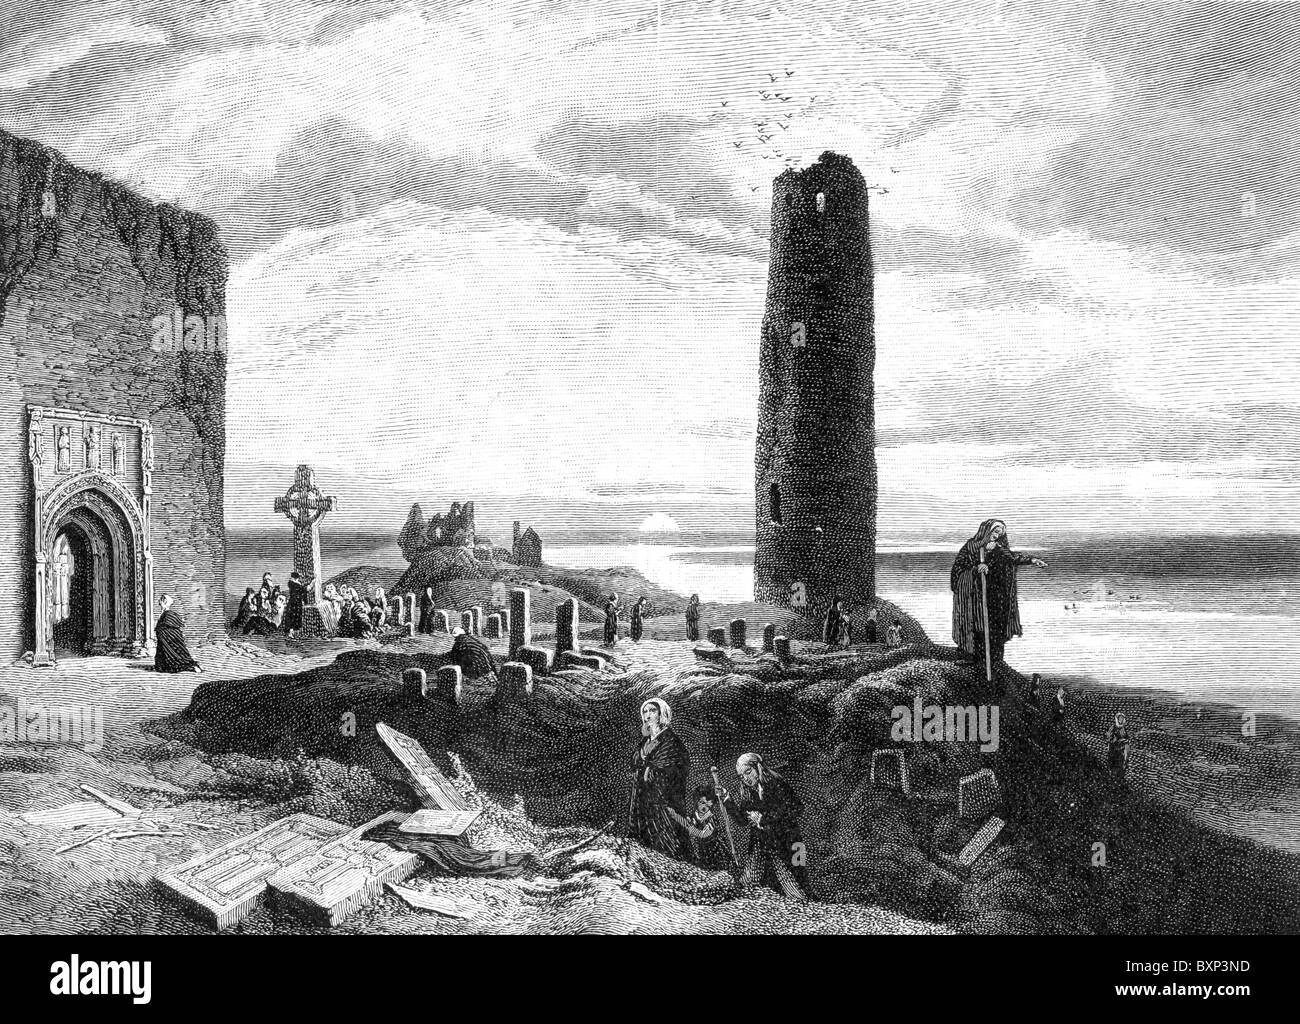 Monastère de Clonmacnoise, County Offaly, Irlande après une gravure de William Henry Bartlett ; noir et blanc Illustration ; Banque D'Images